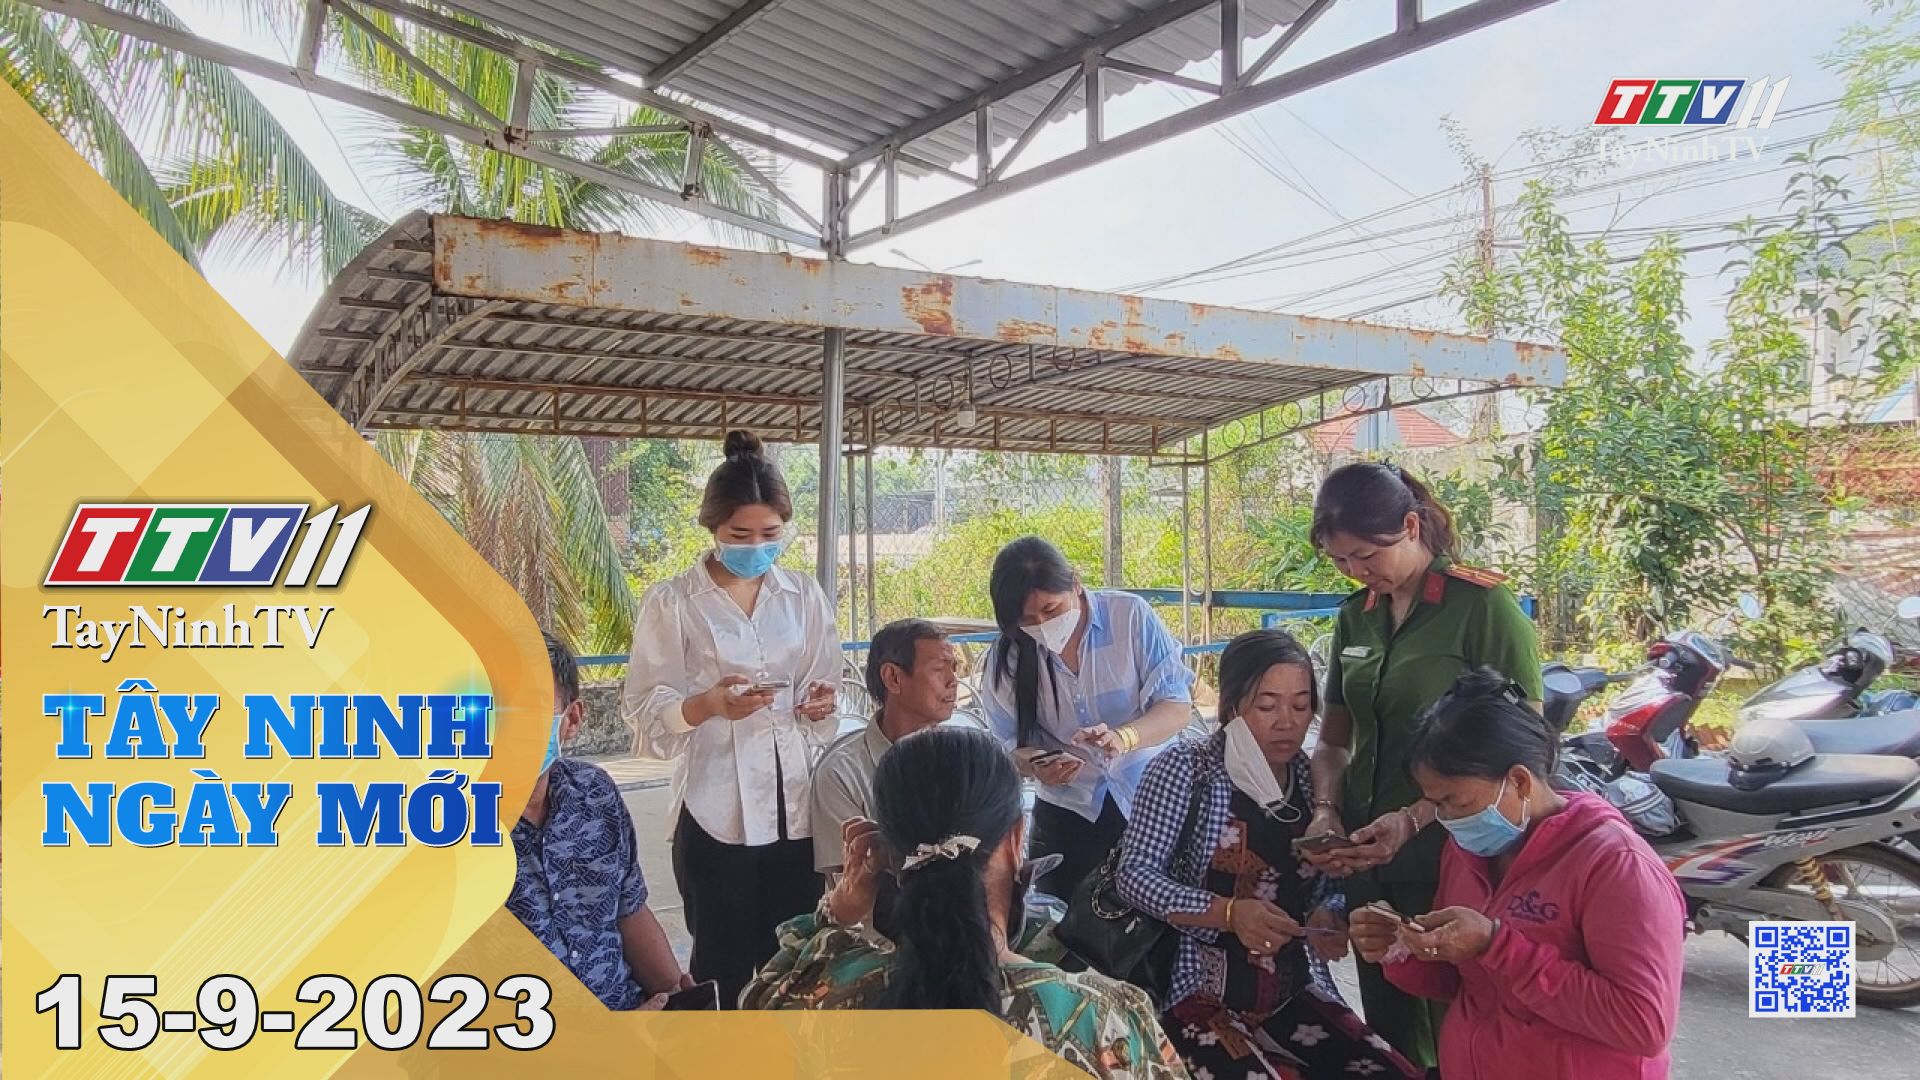 Tây Ninh ngày mới 15-9-2023 | Tin tức hôm nay | TayNinhTV